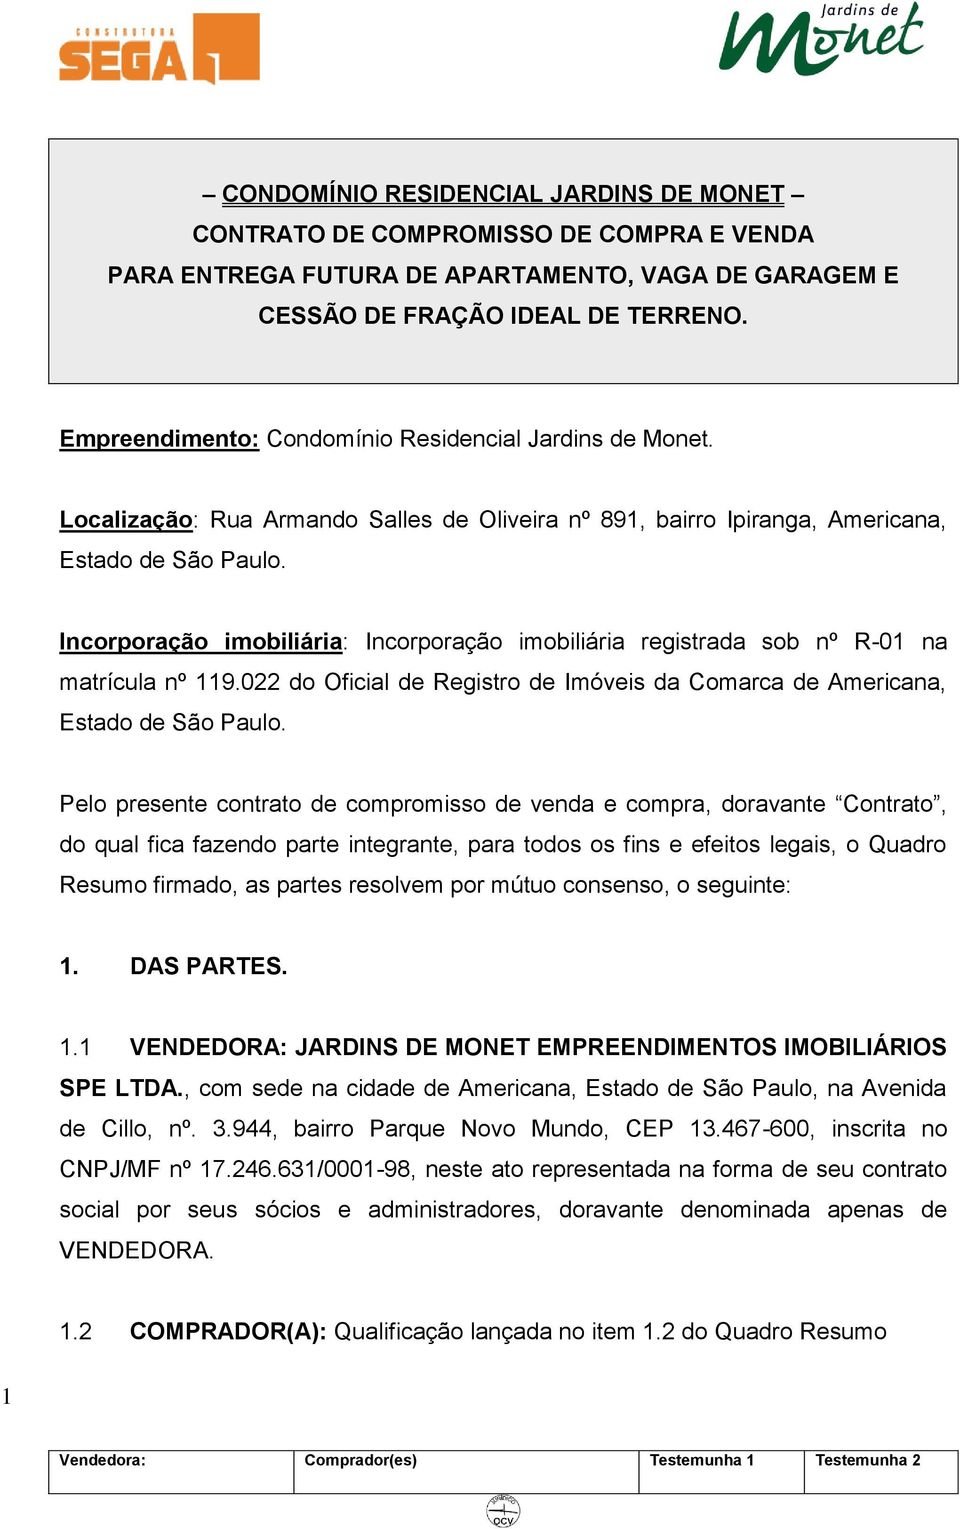 Incorporação imobiliária: Incorporação imobiliária registrada sob nº R-01 na matrícula nº 119.022 do Oficial de Registro de Imóveis da Comarca de Americana, Estado de São Paulo.